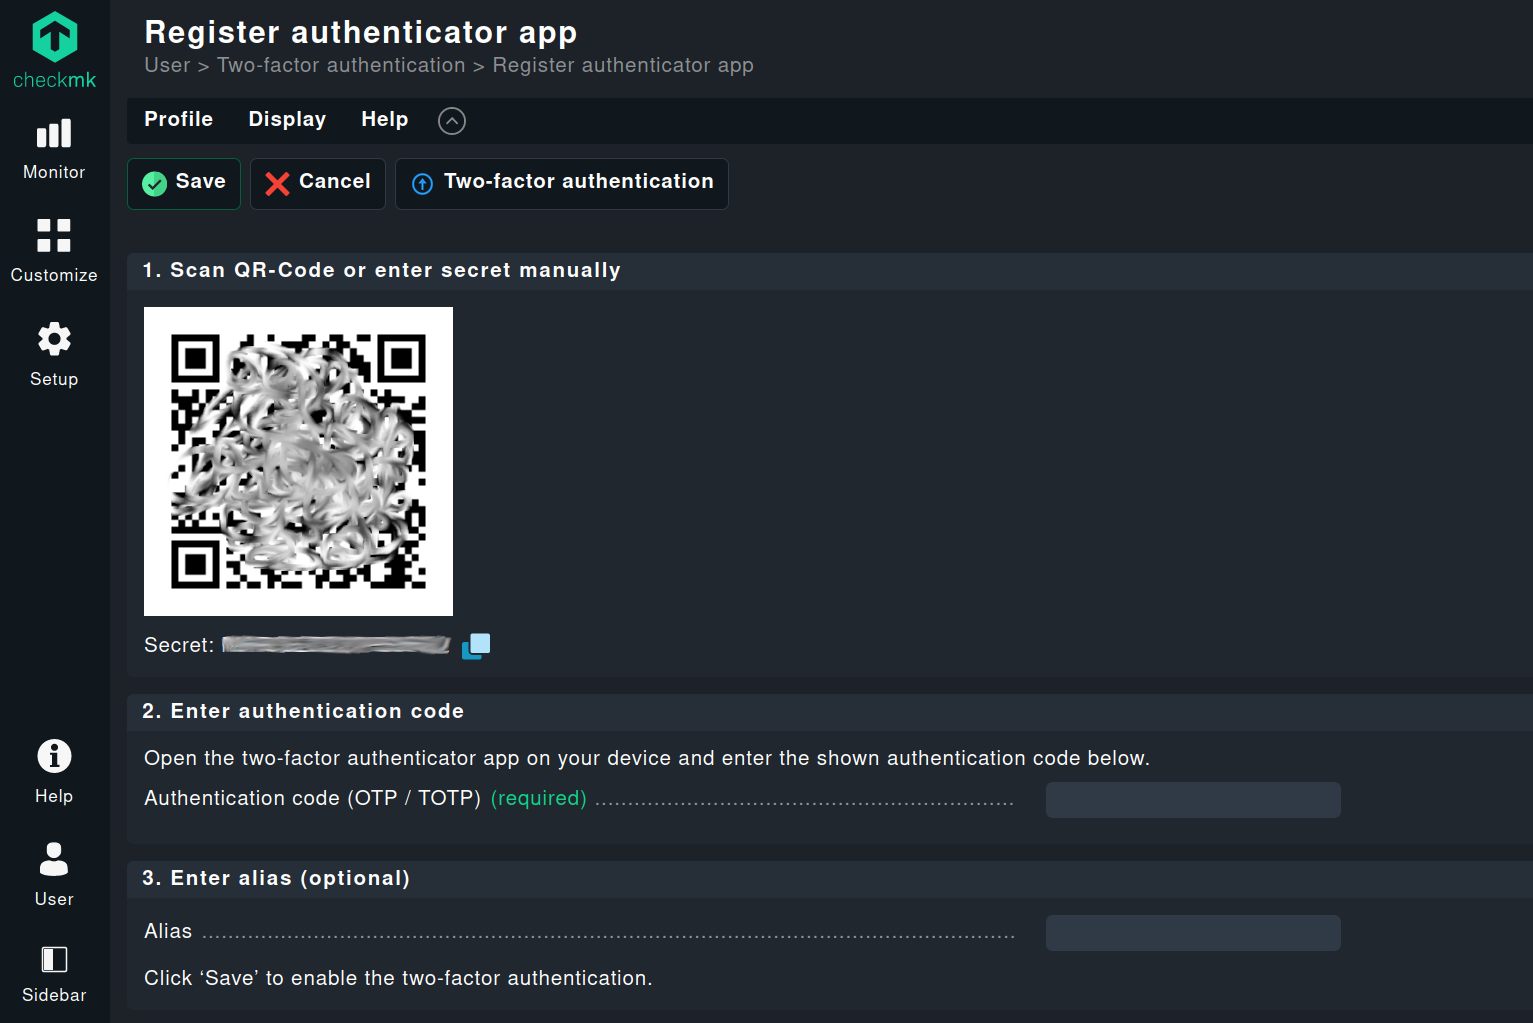 Konfiguration der Authenticator-App in Checkmk